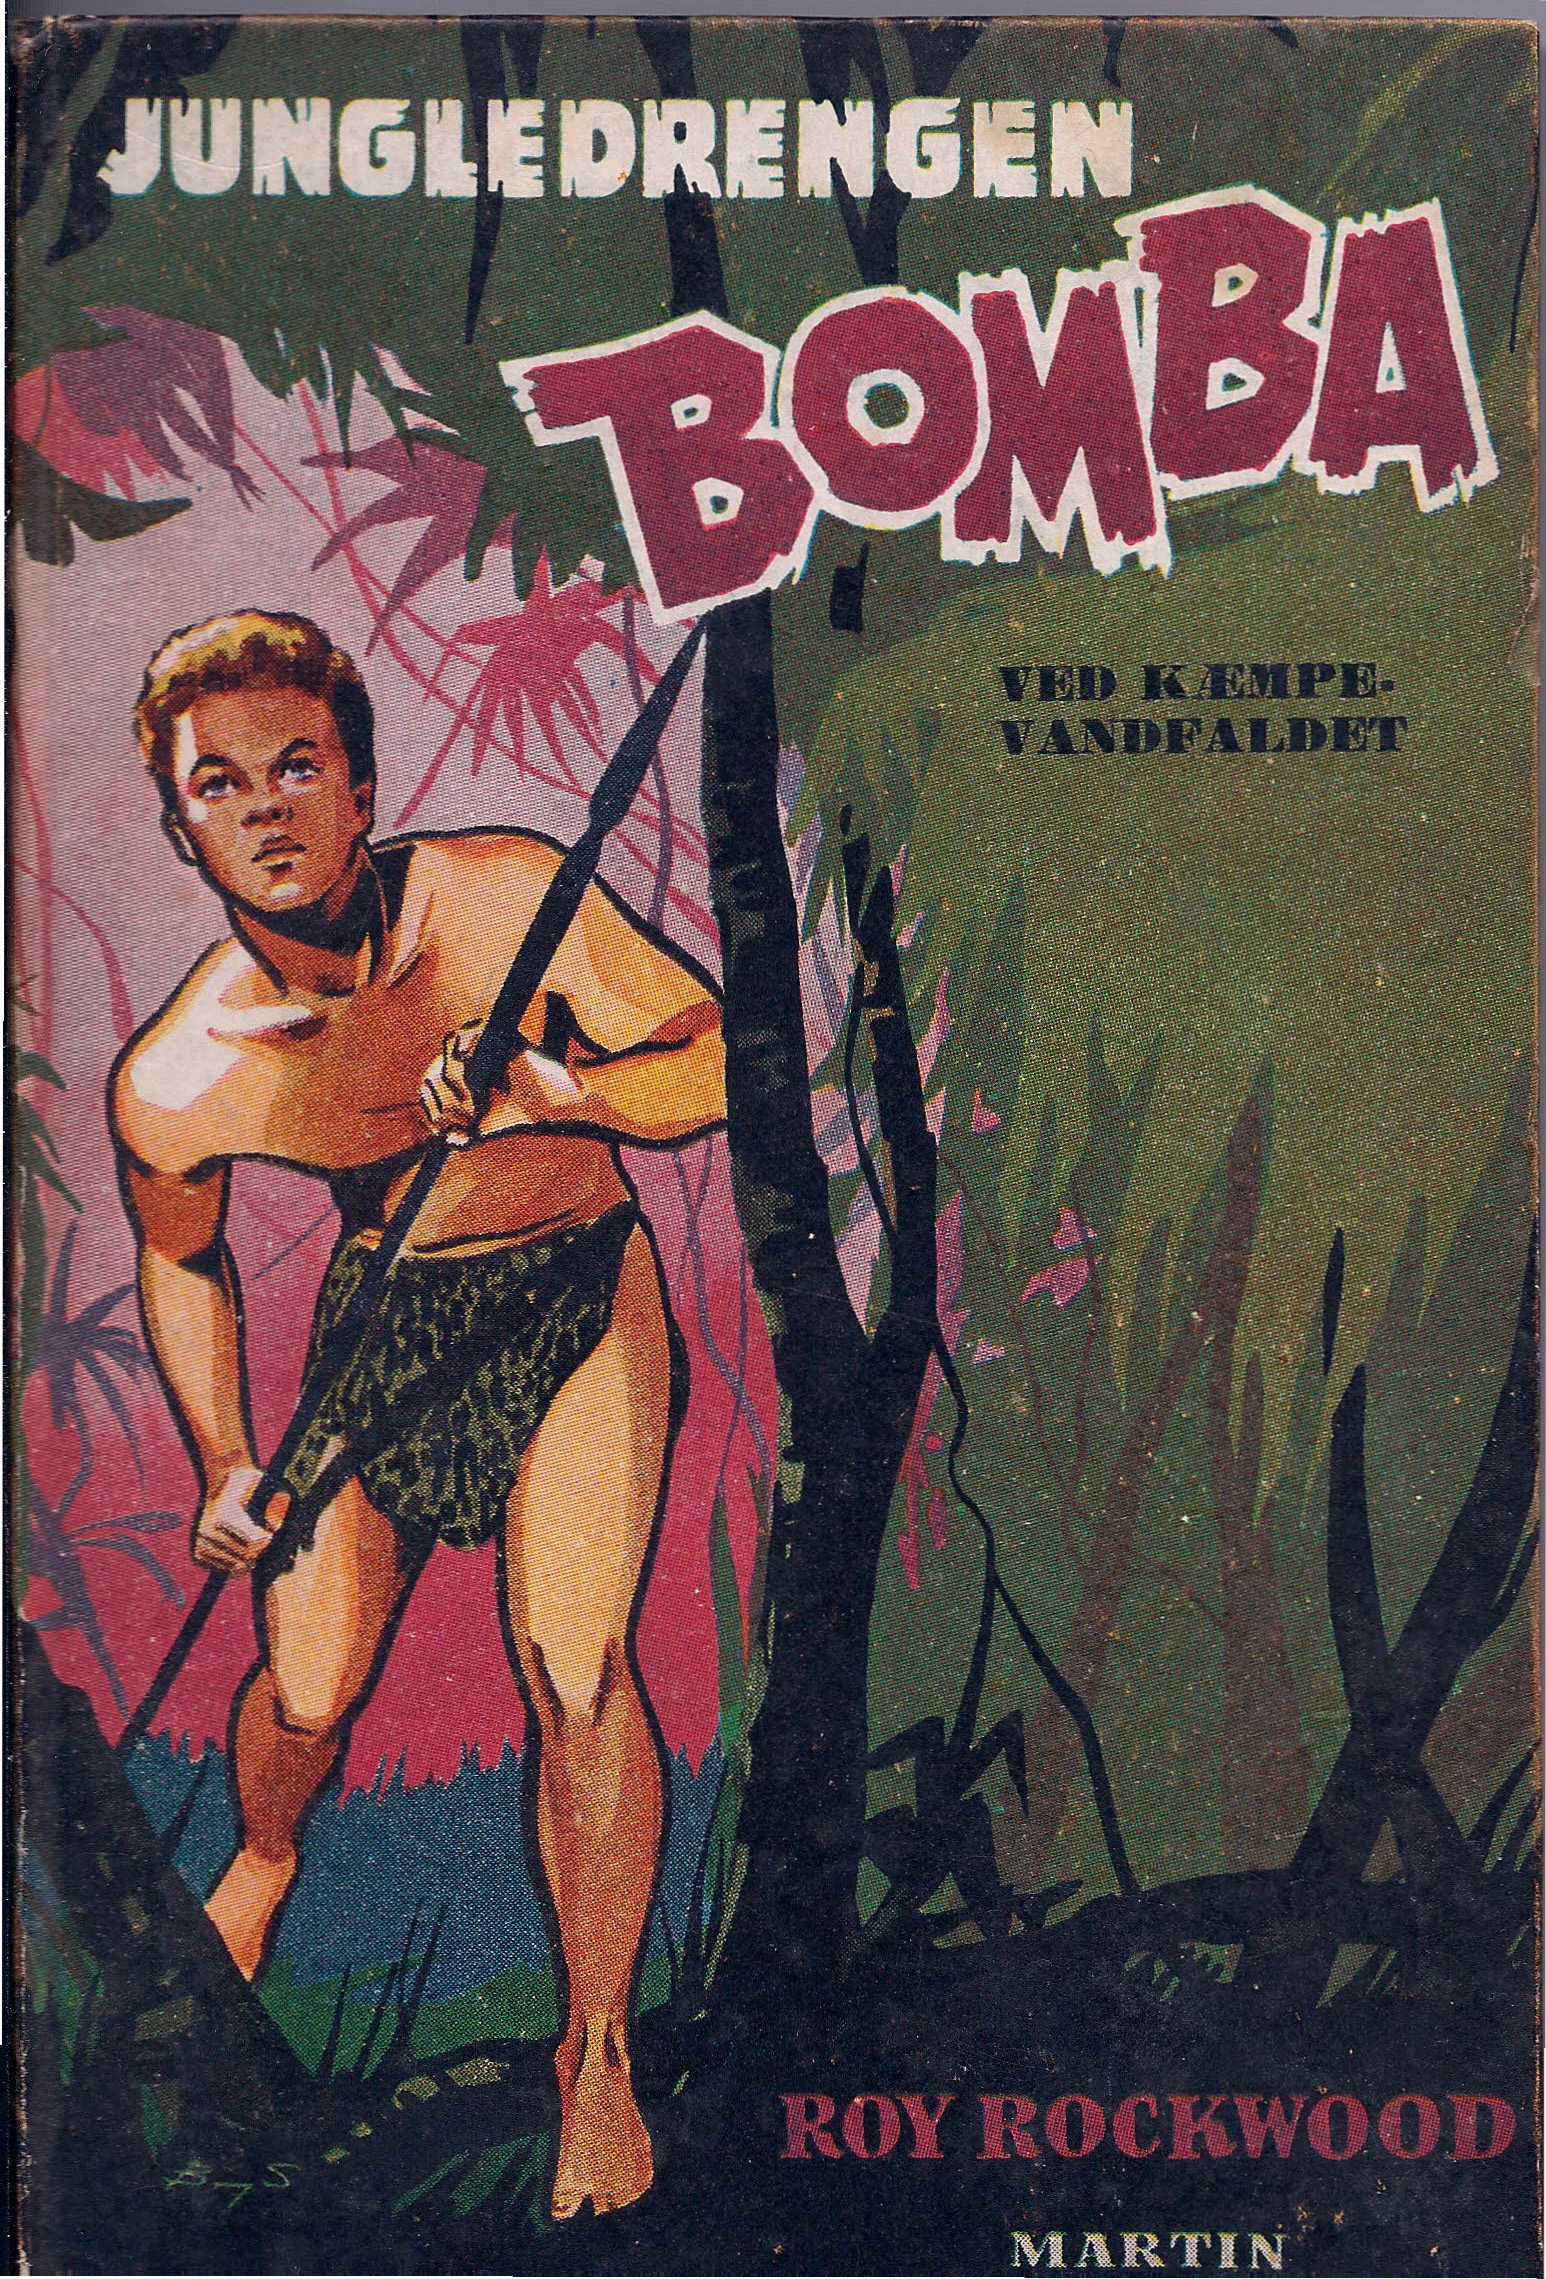 Jungledrengen Bomba - Ved kæmpe-vandfaldet - Roy Rockwood-1